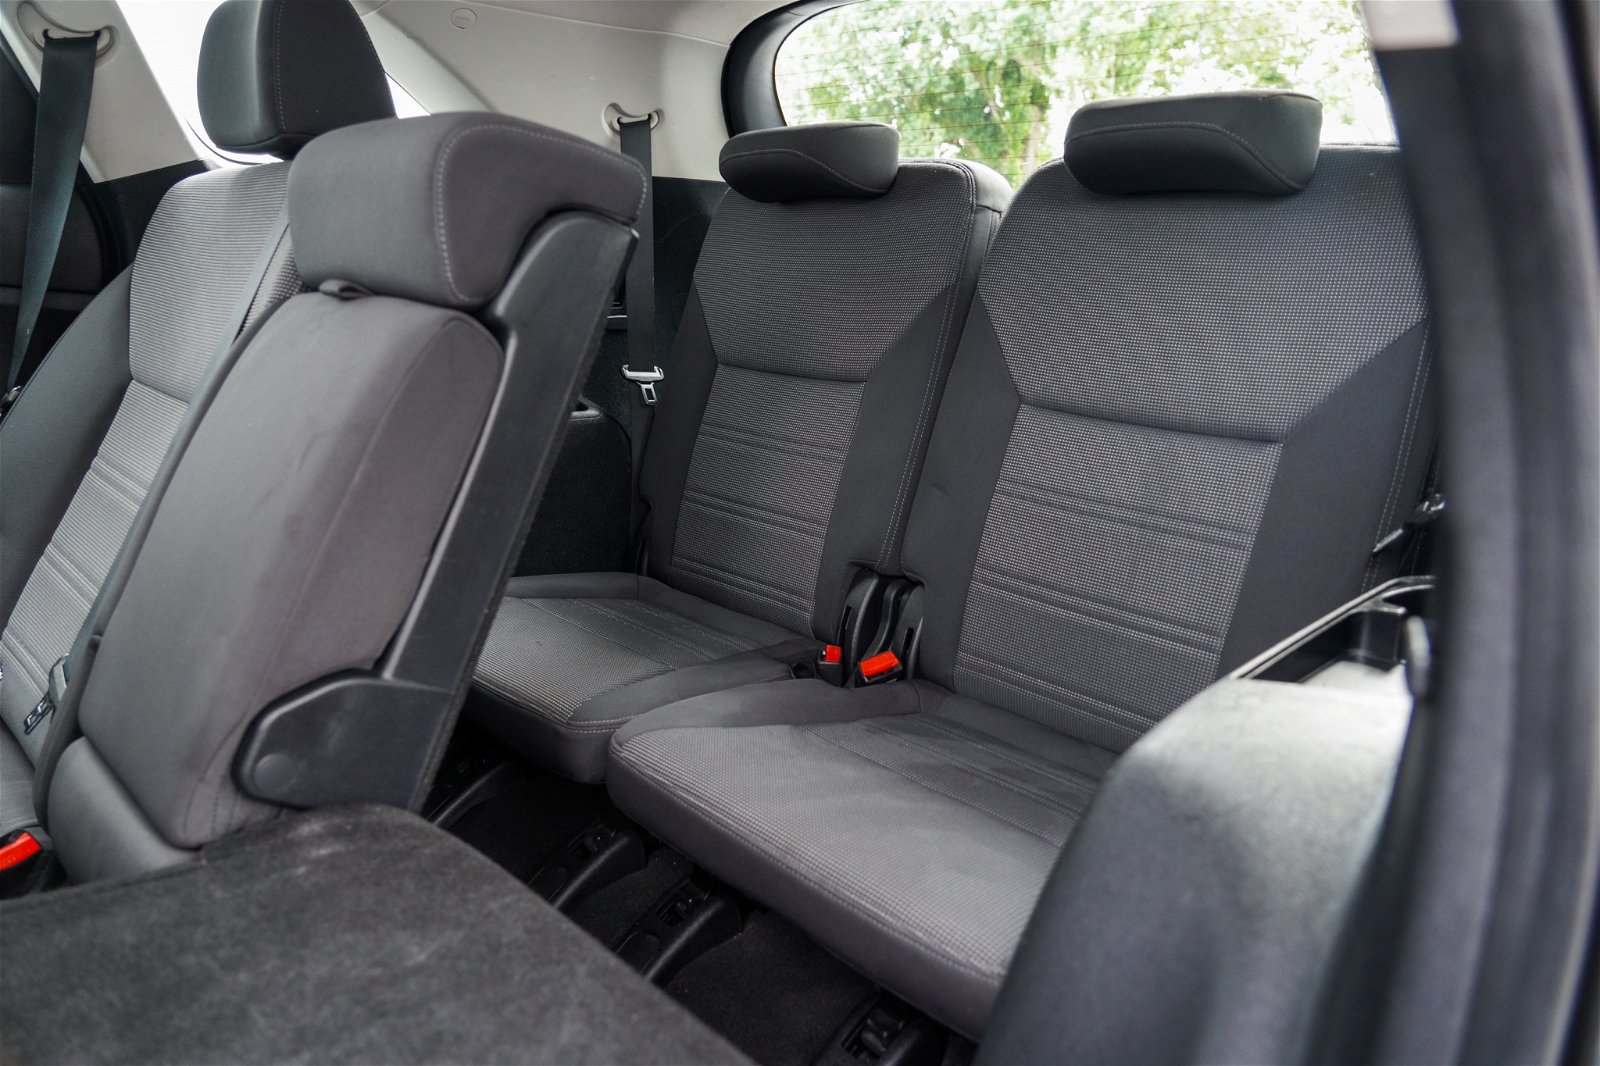 2016 Kia Sorento LX 2.4P AWD 6A 7 Seat 5Dr Wagon